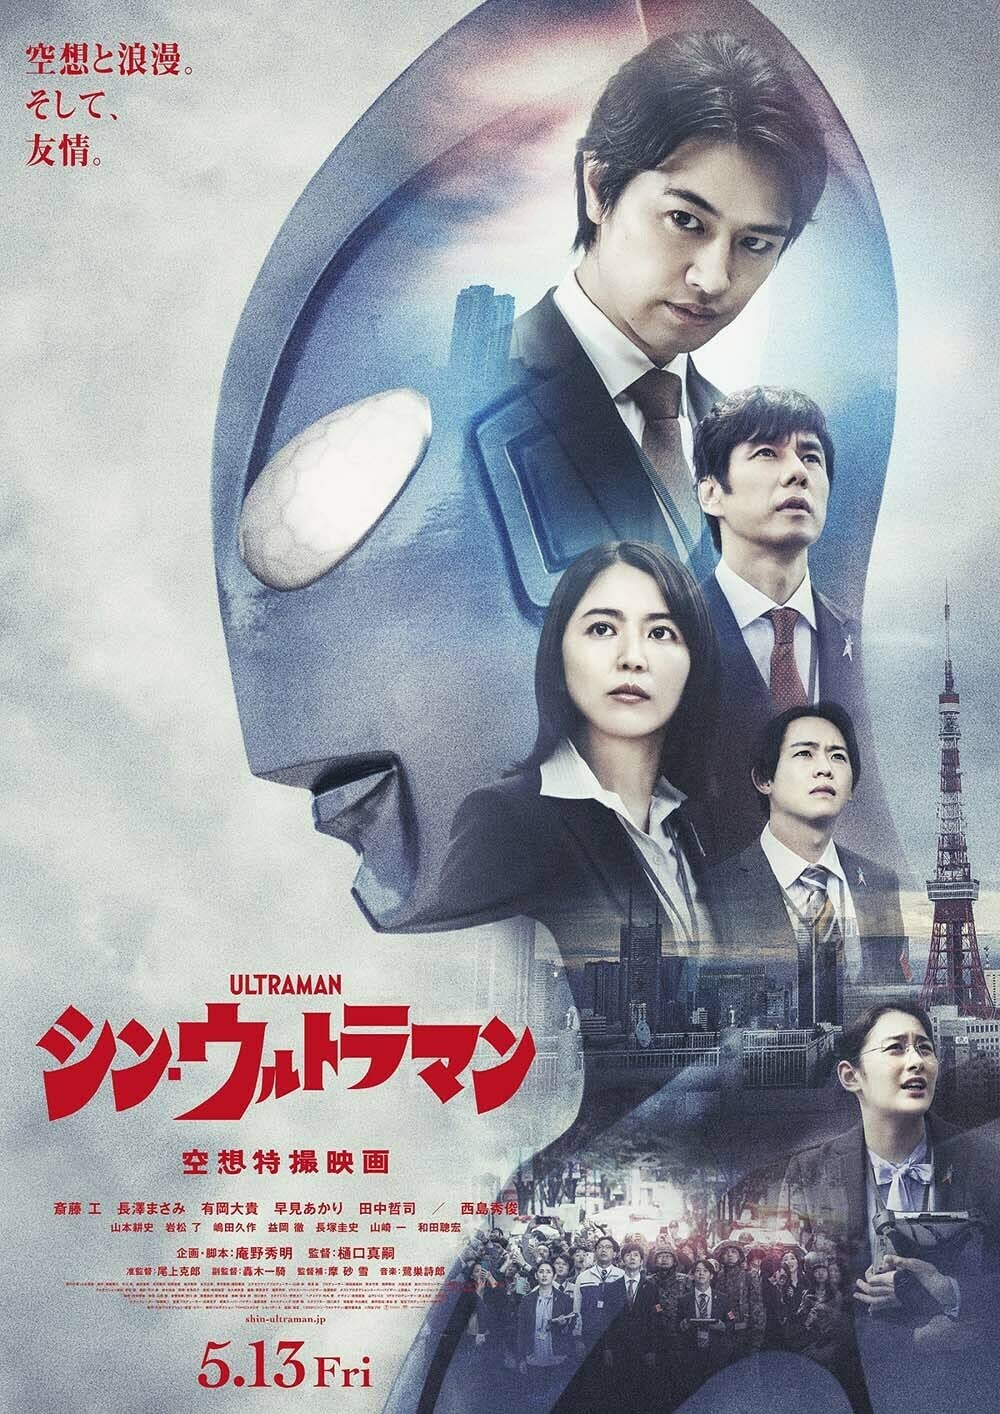 Poster Imagine Film Festival: Shin Ultraman